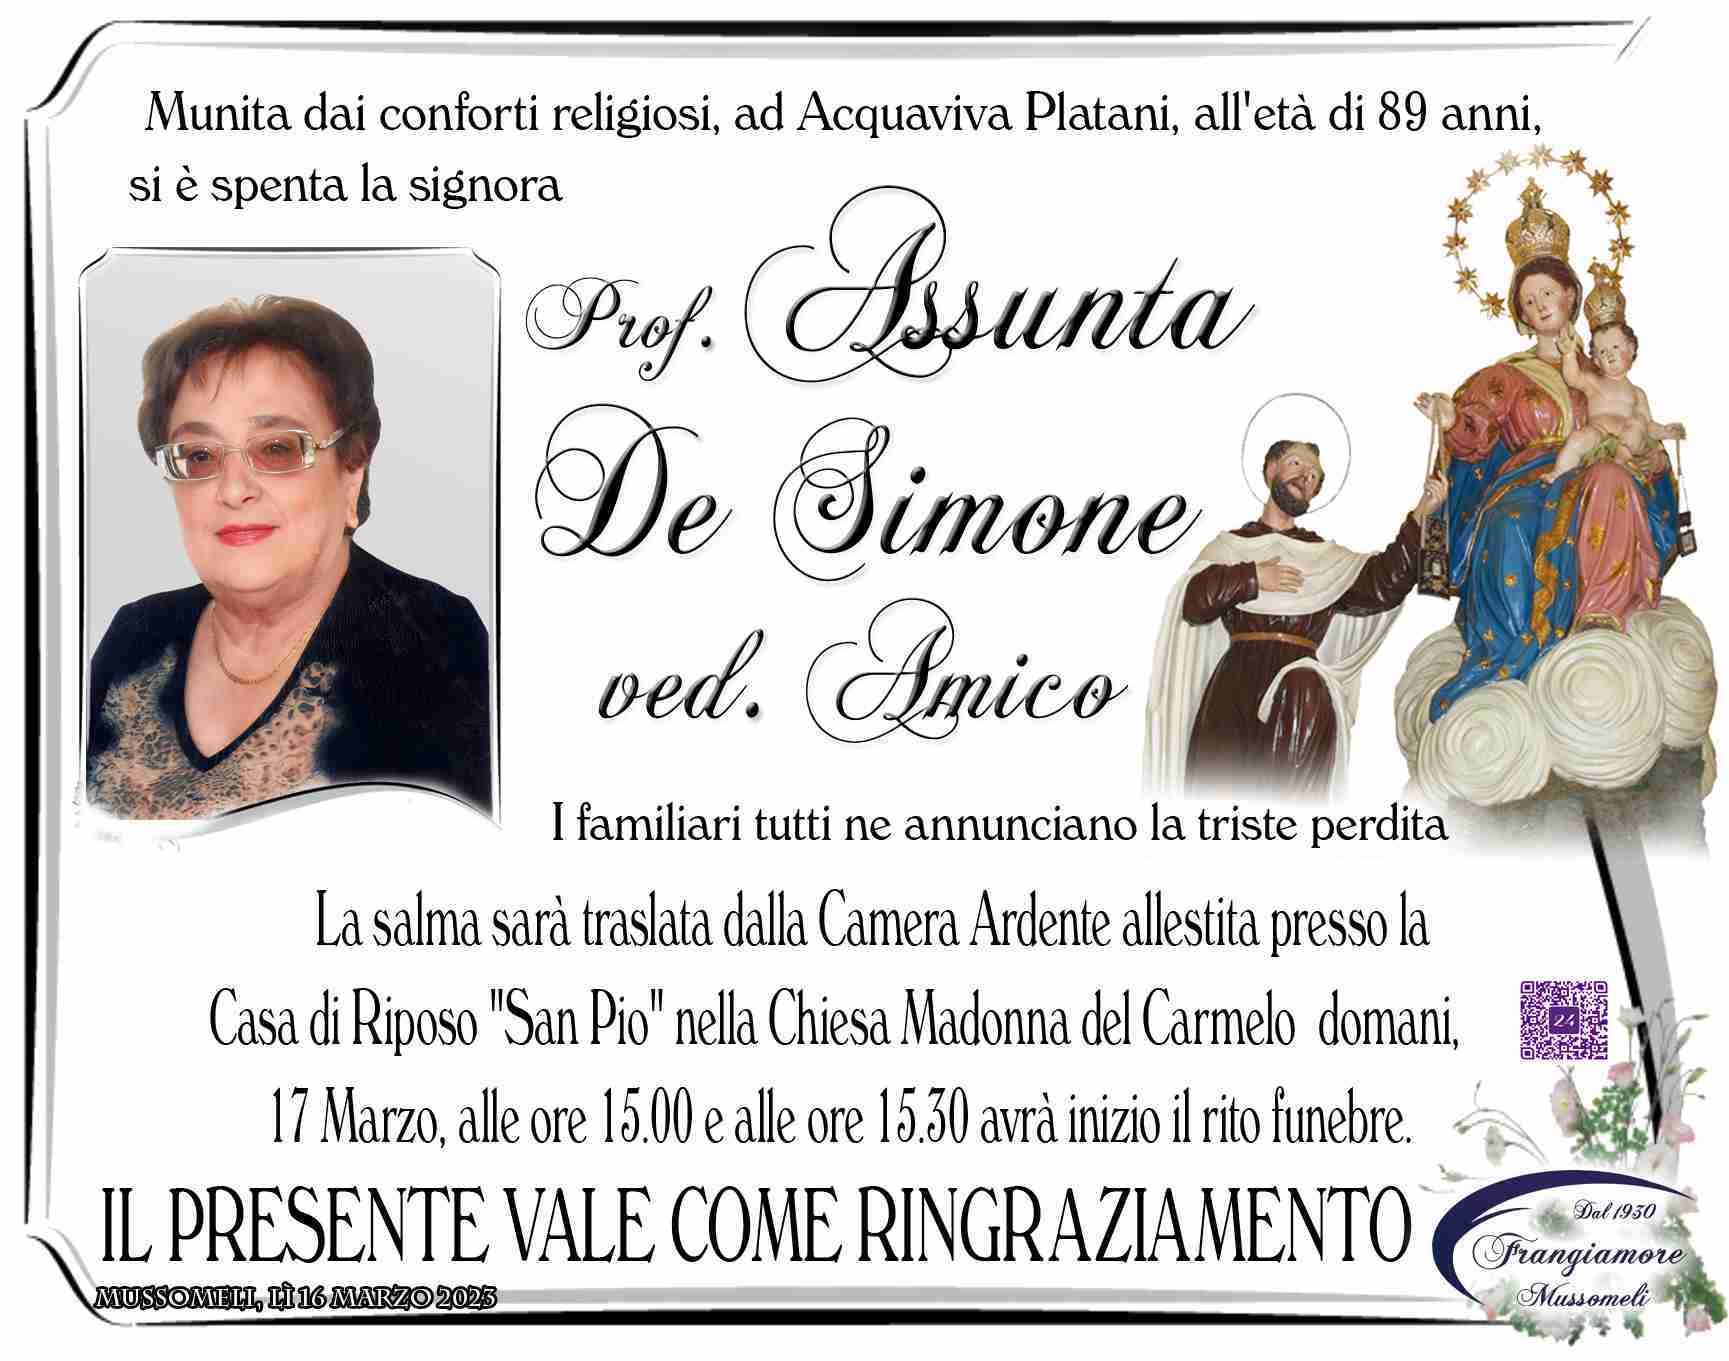 Assunta De Simone